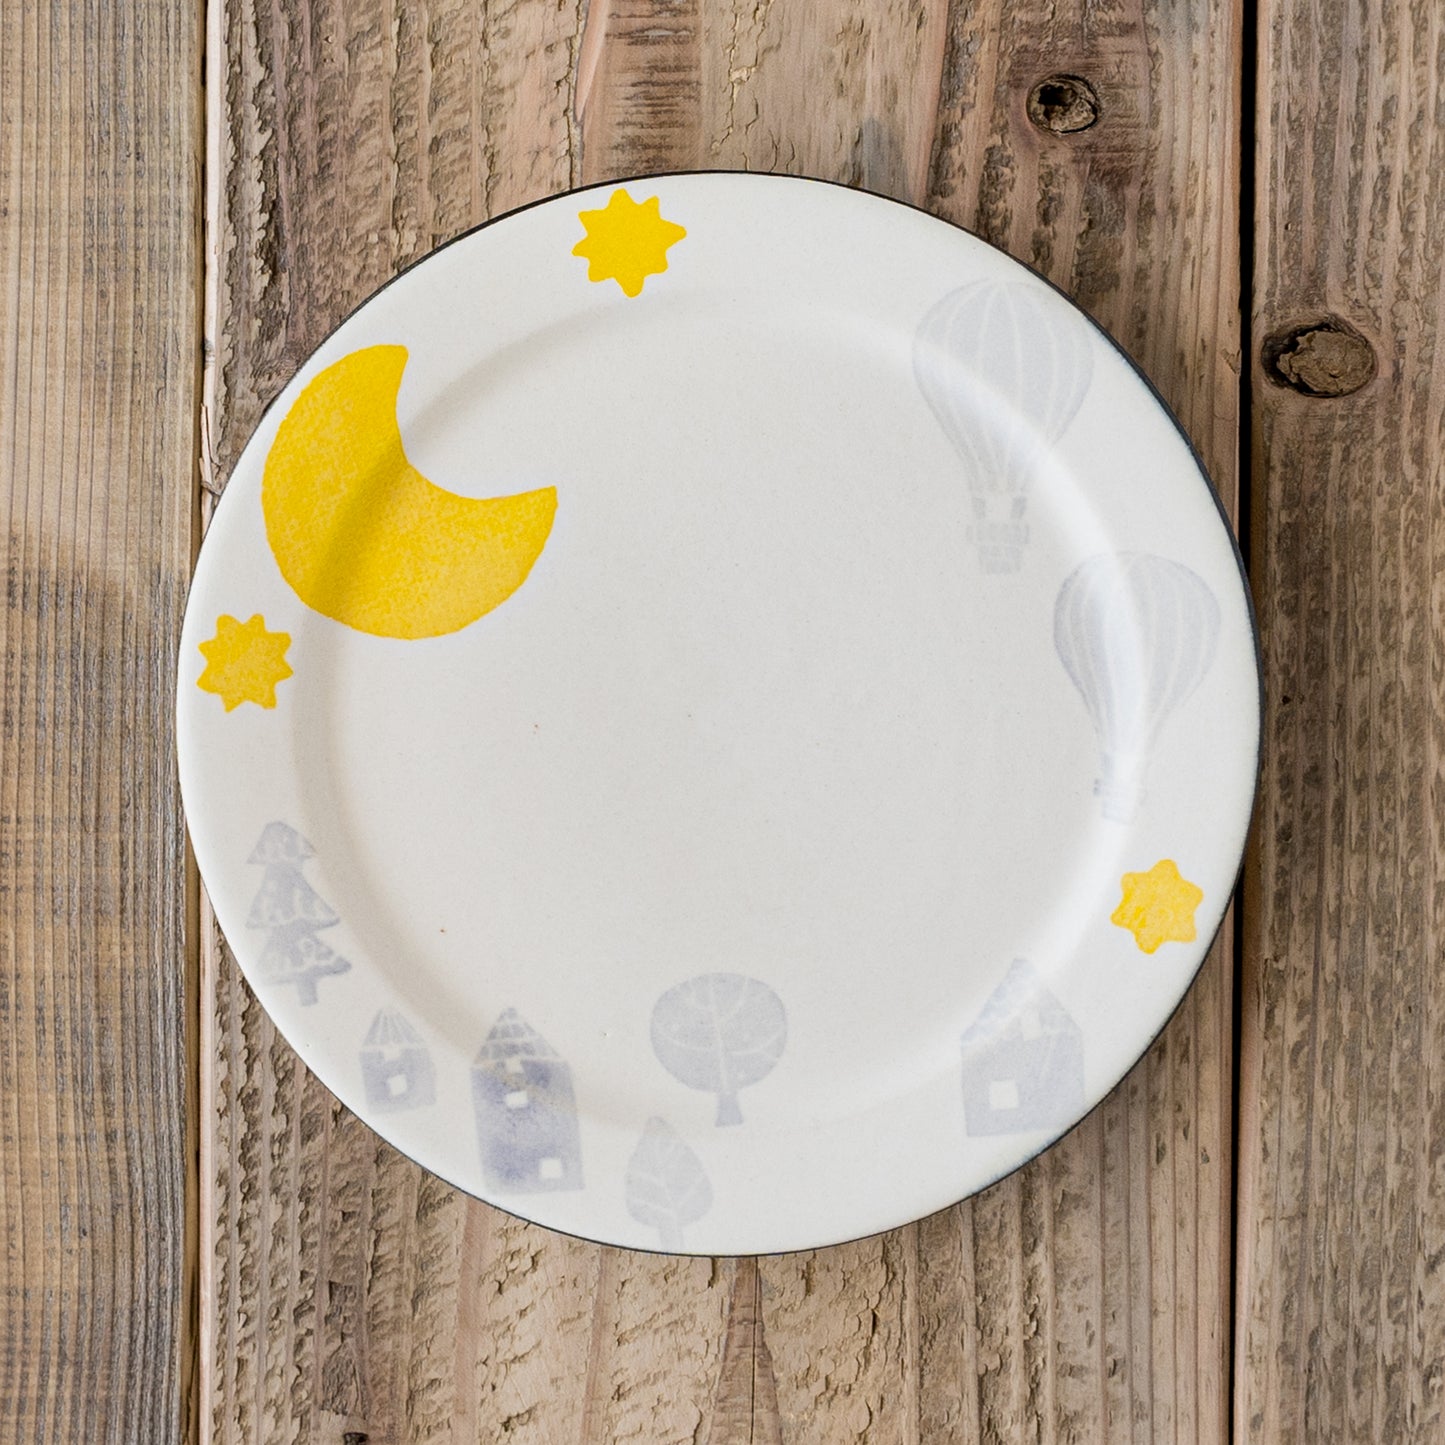 ふんわり優しい月と気球の絵柄にほっこりする安見工房の和紙染めのの6寸リム皿